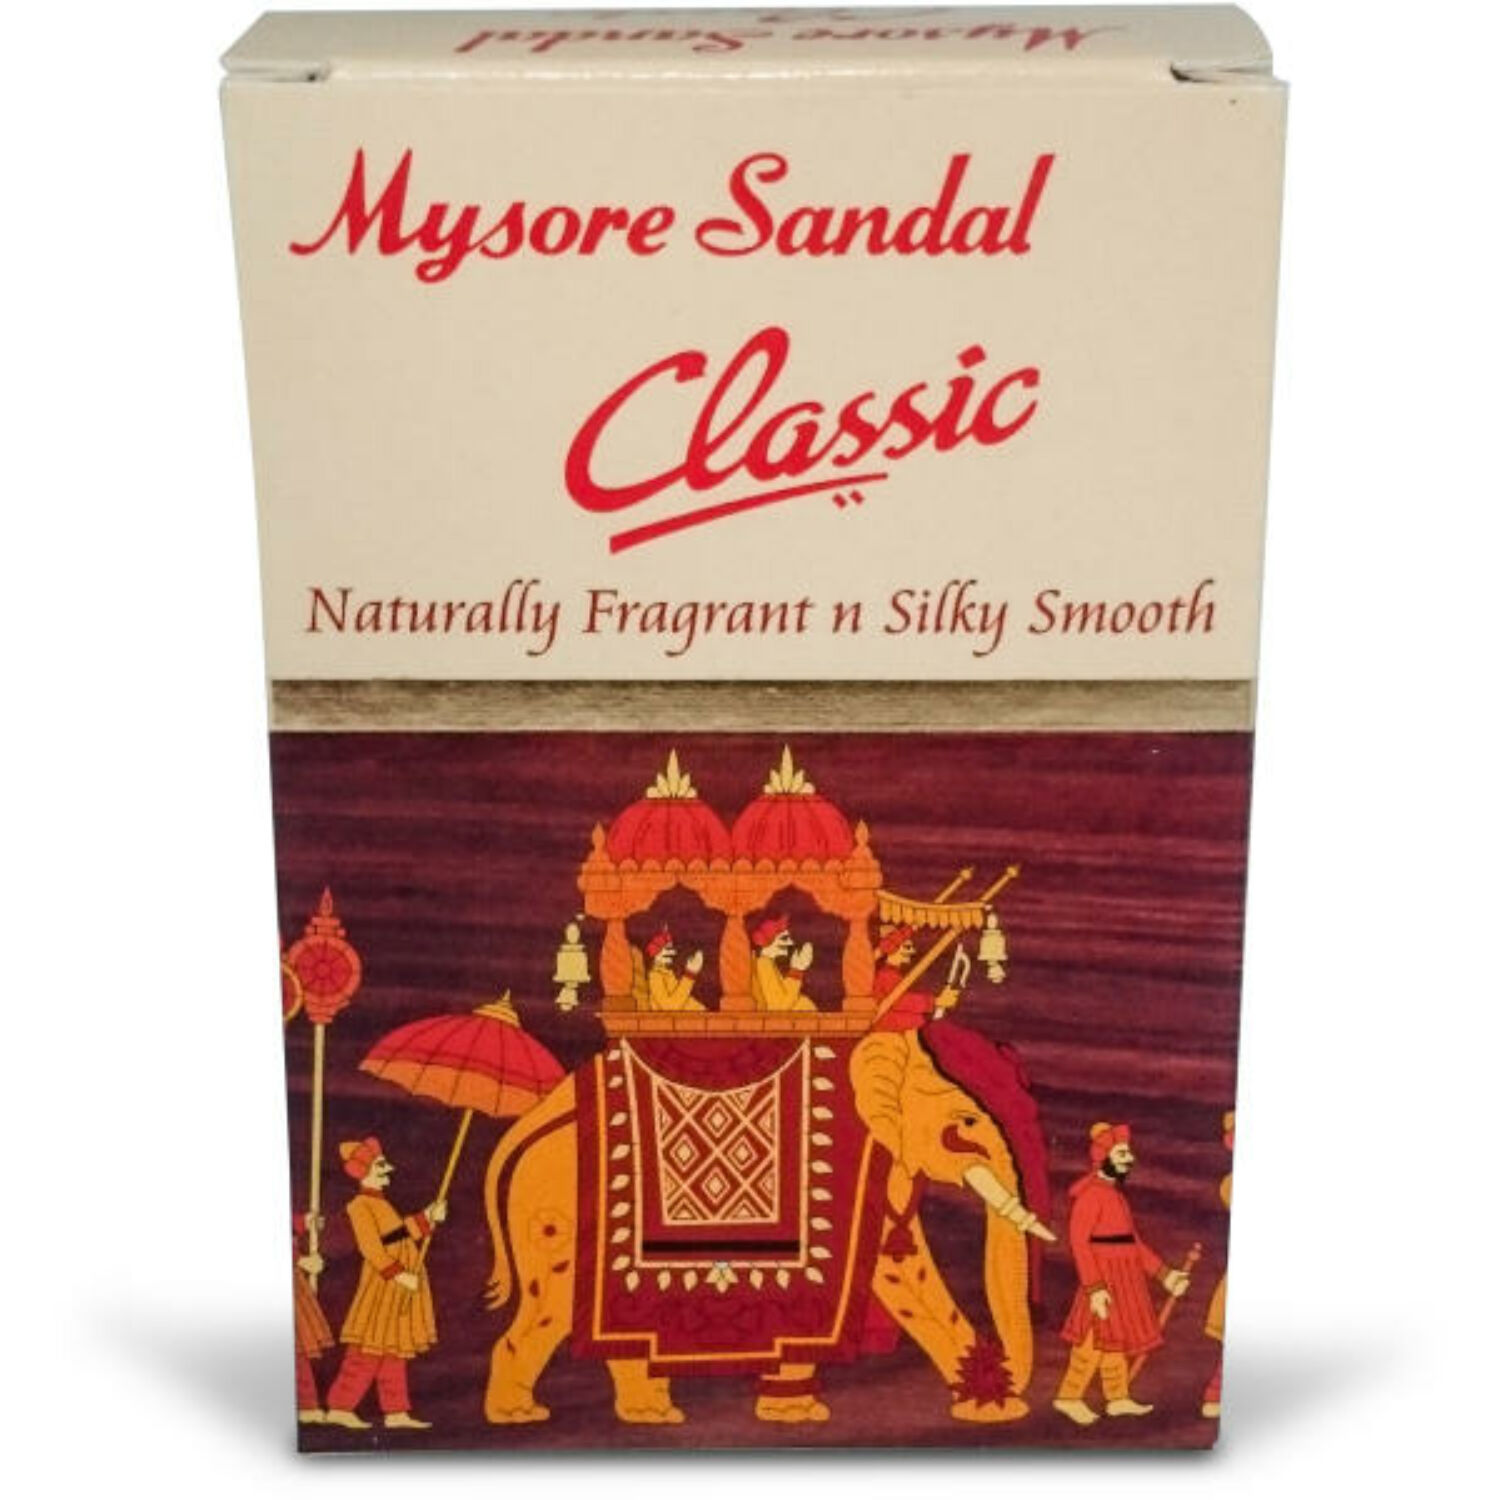 Mysore szappan szantál classic 125g